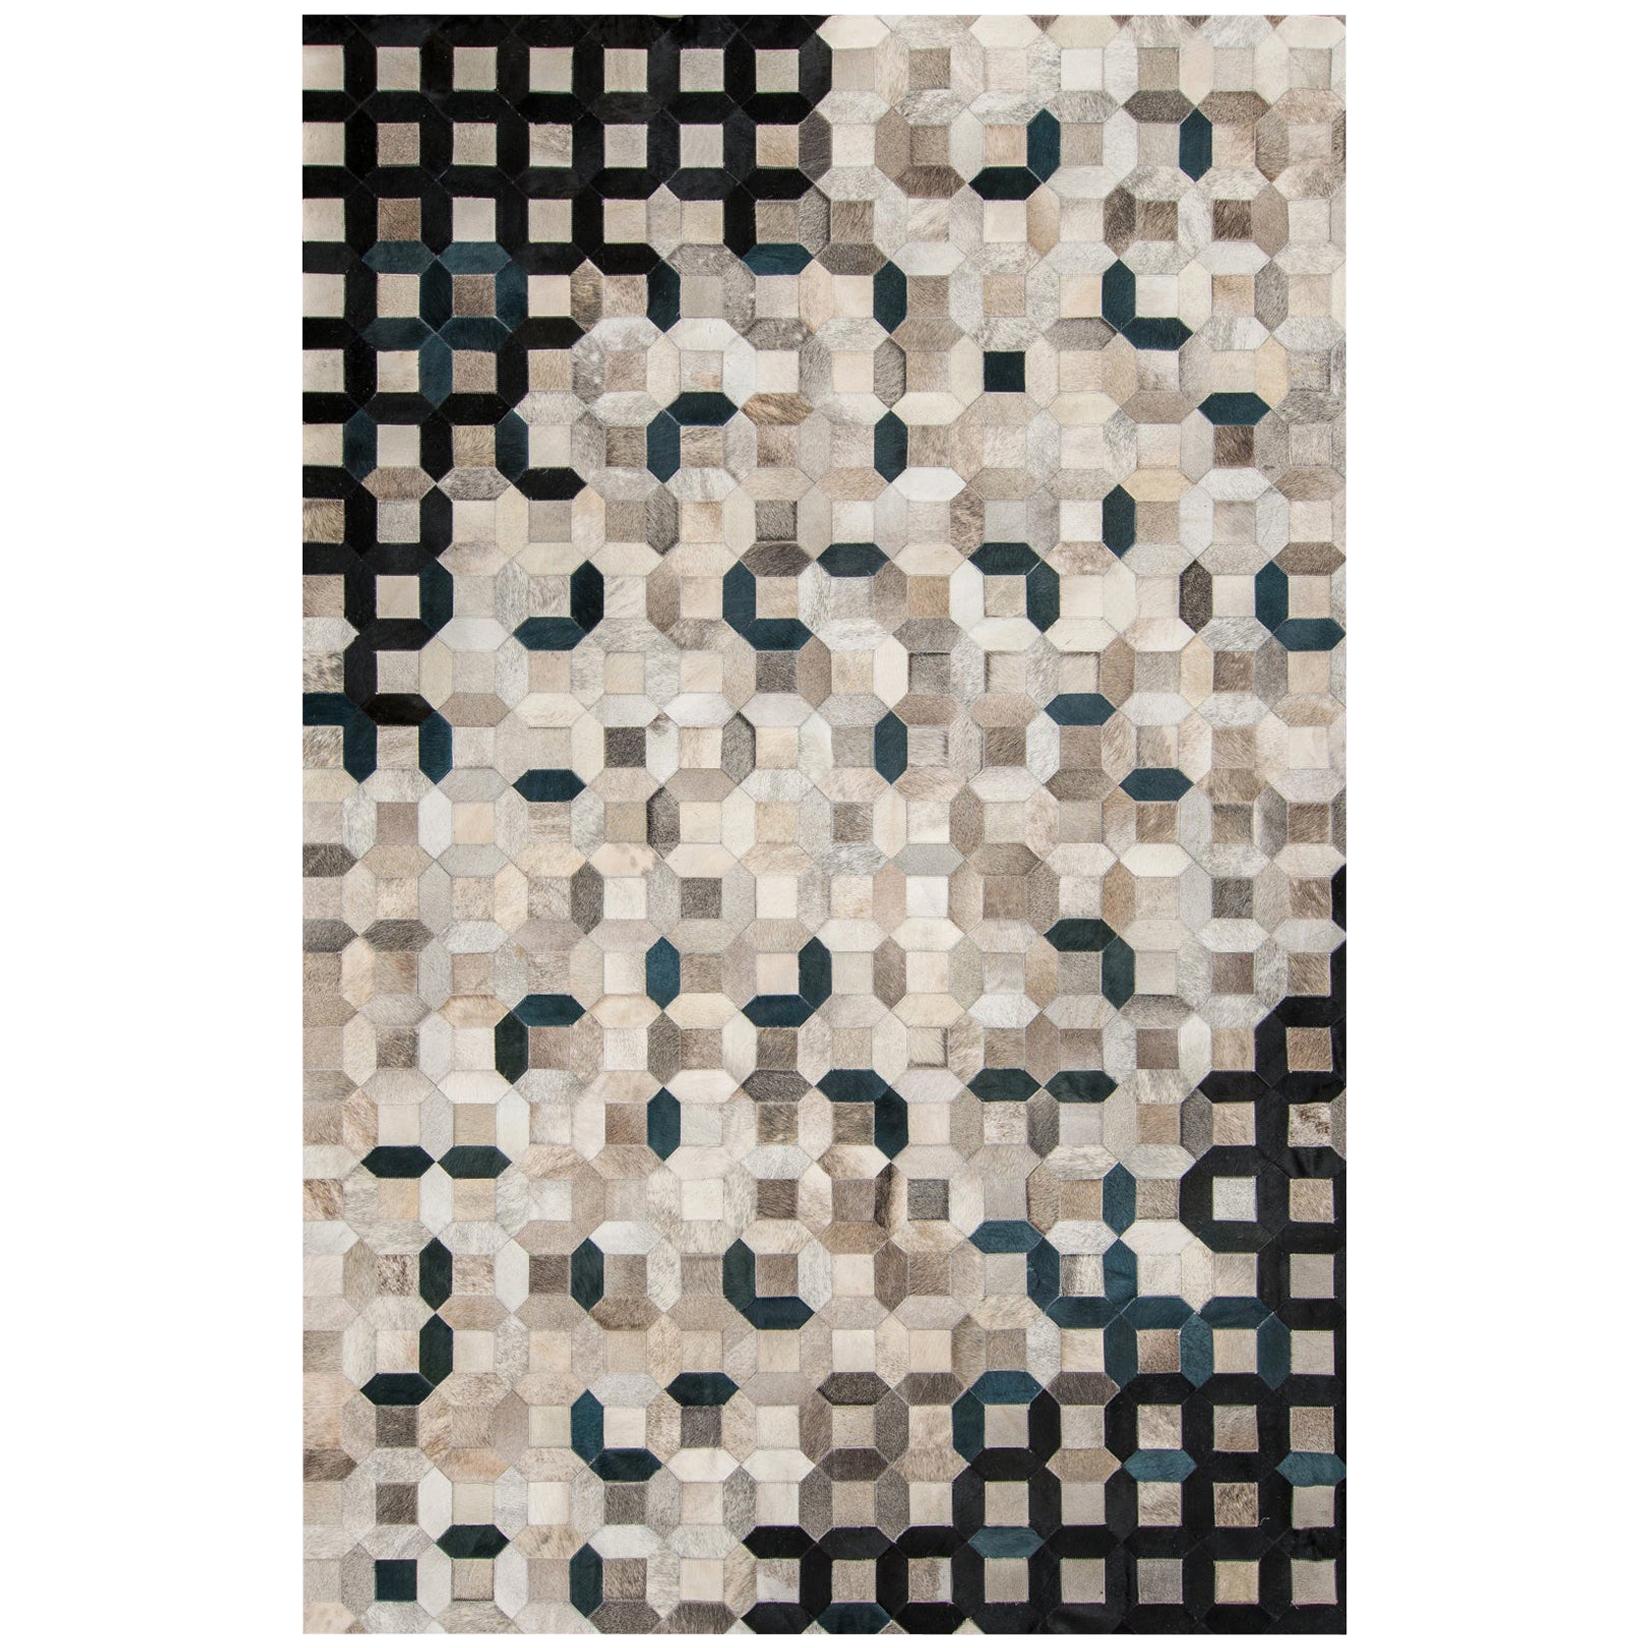 Schwarzer, grauer Trellis-Kuhfell-Bodenteppich XX-Large aus Mosaik